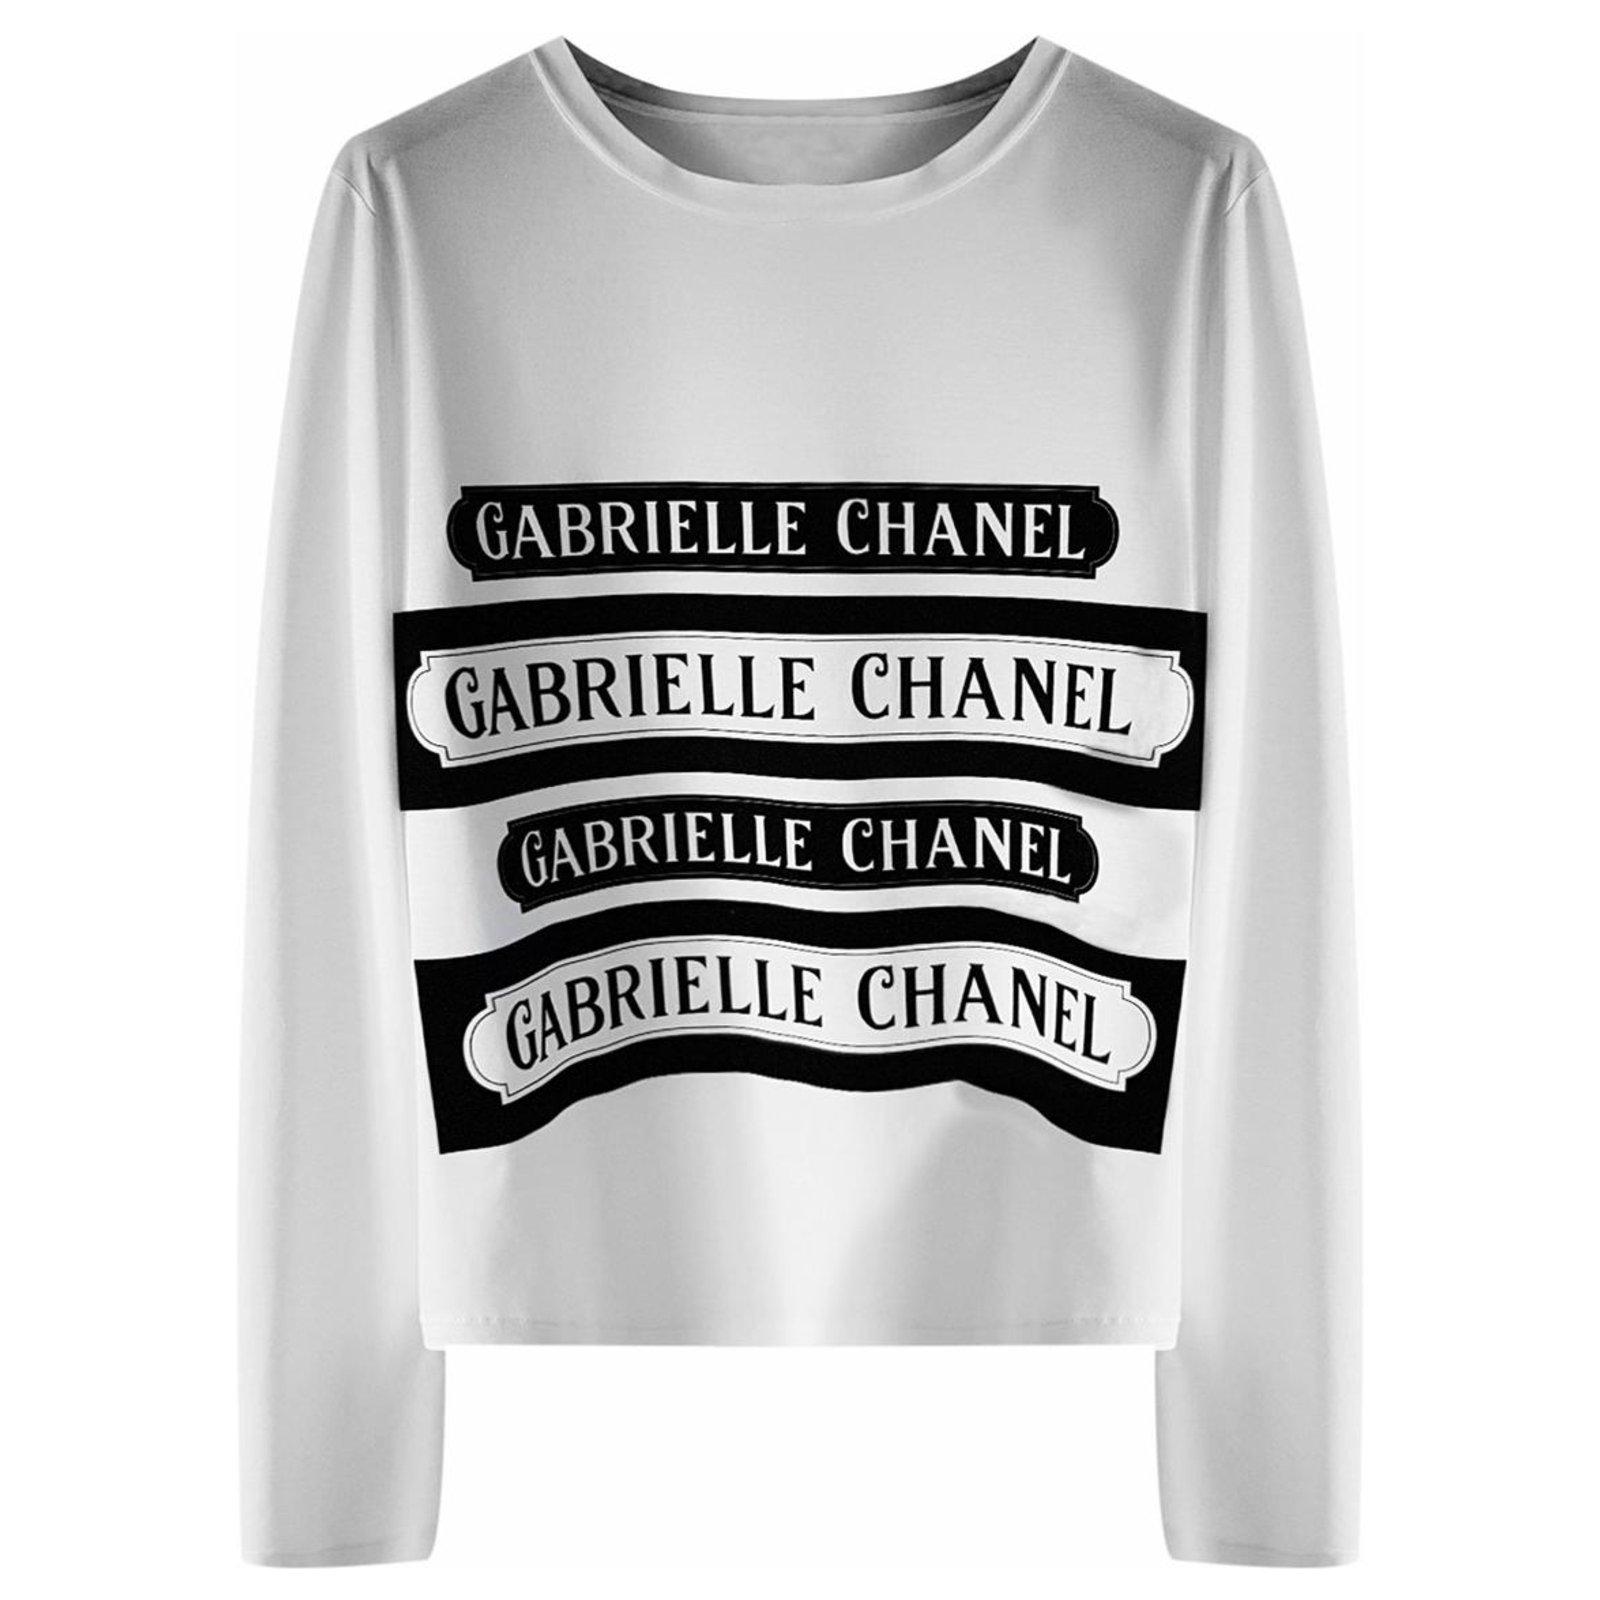 Chanel shirt, Chanel Sweatshirt, fashion shirt Gucci Shirt for women men,  Unisex Sweatshirt